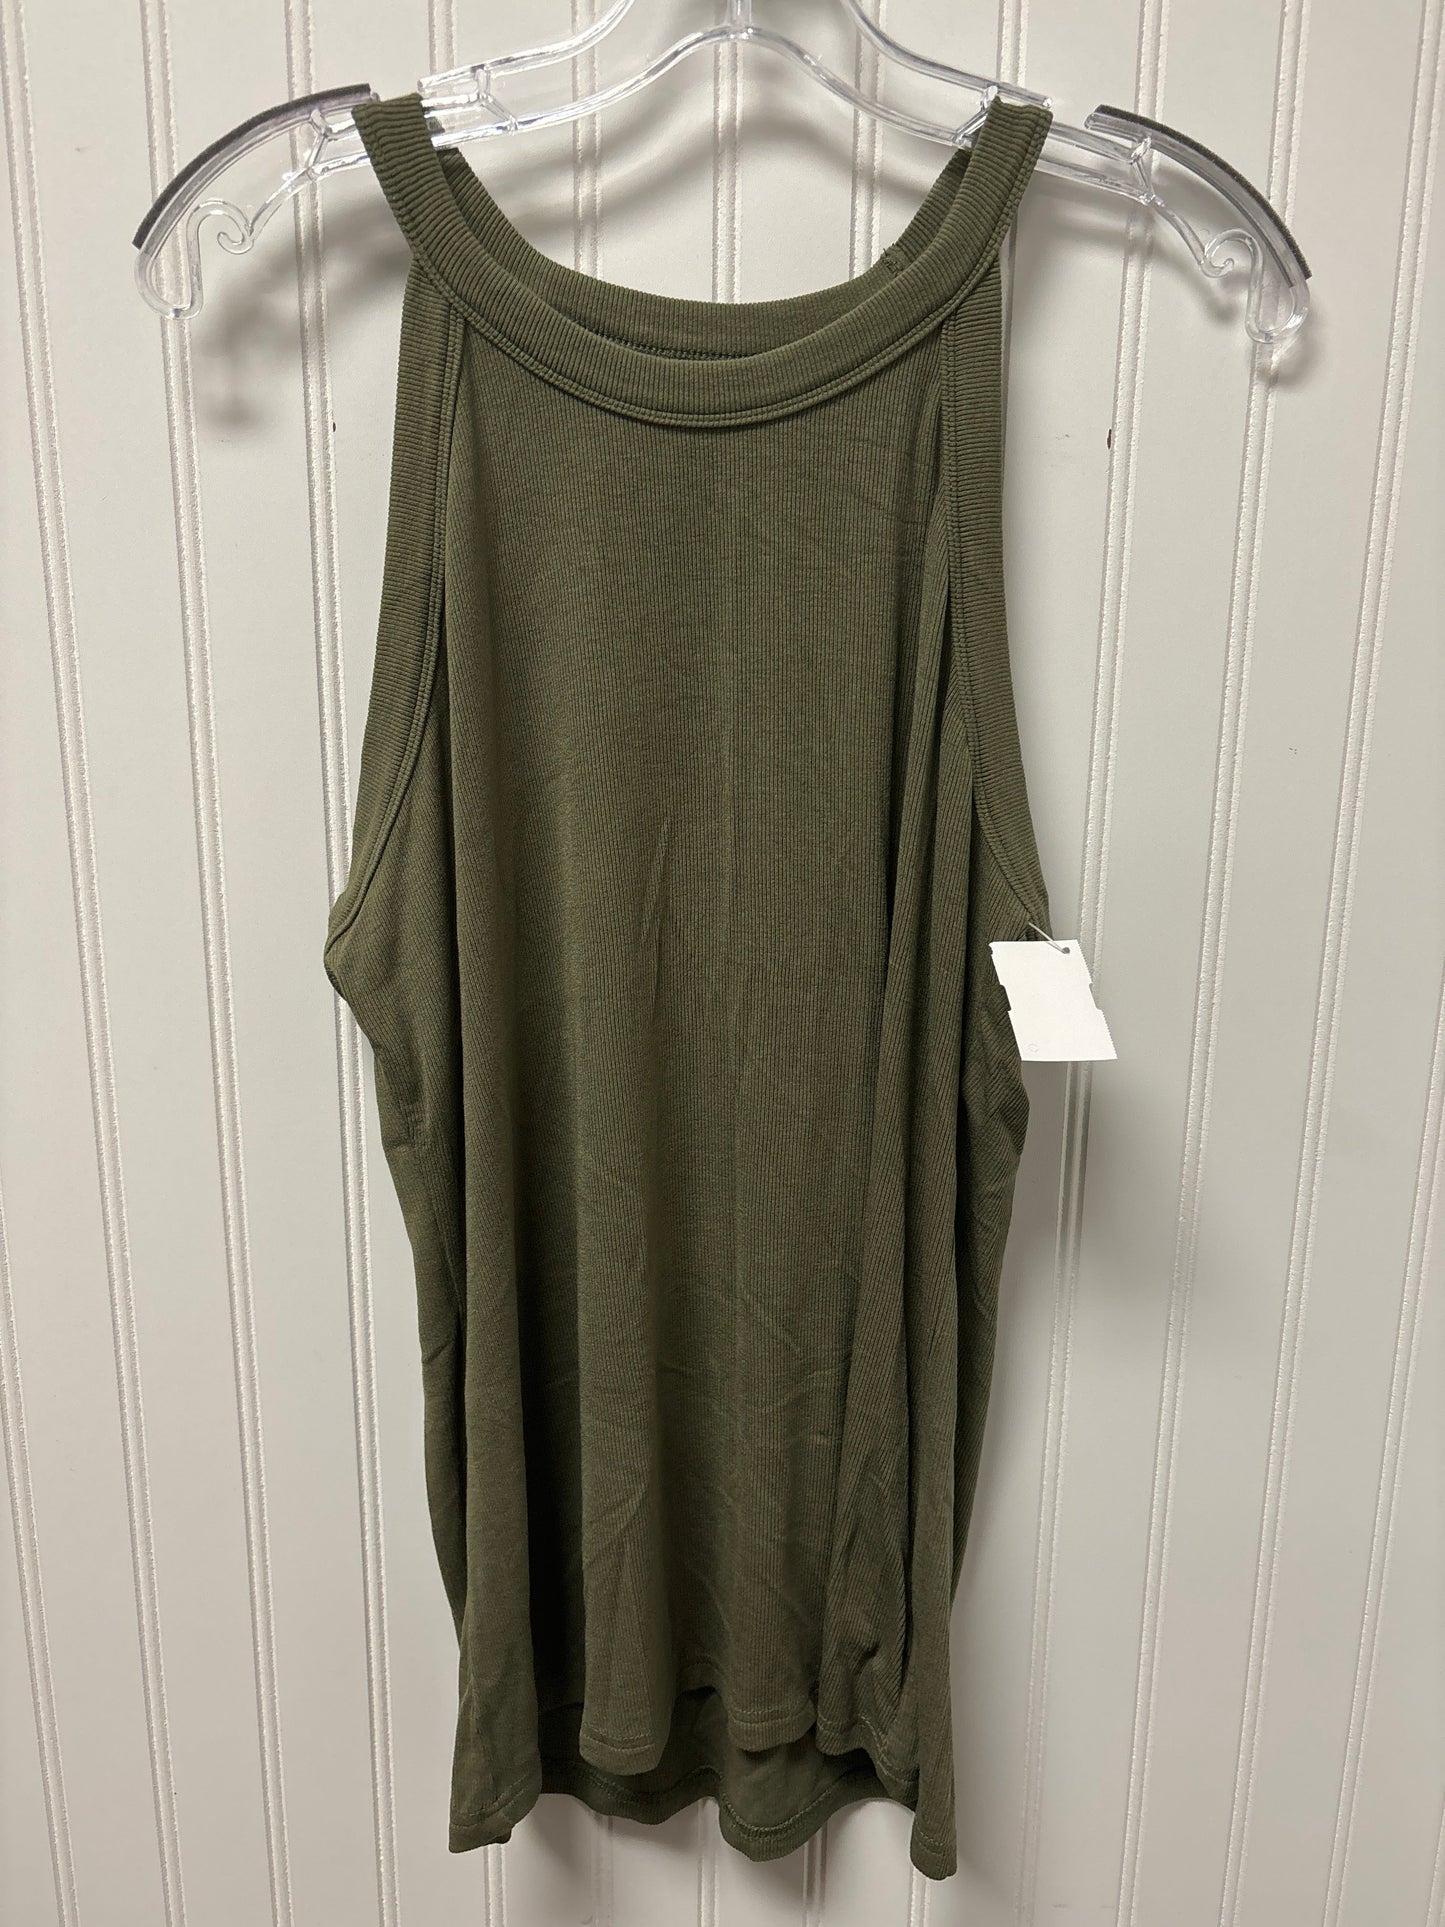 Green Top Sleeveless Clothes Mentor, Size 2x